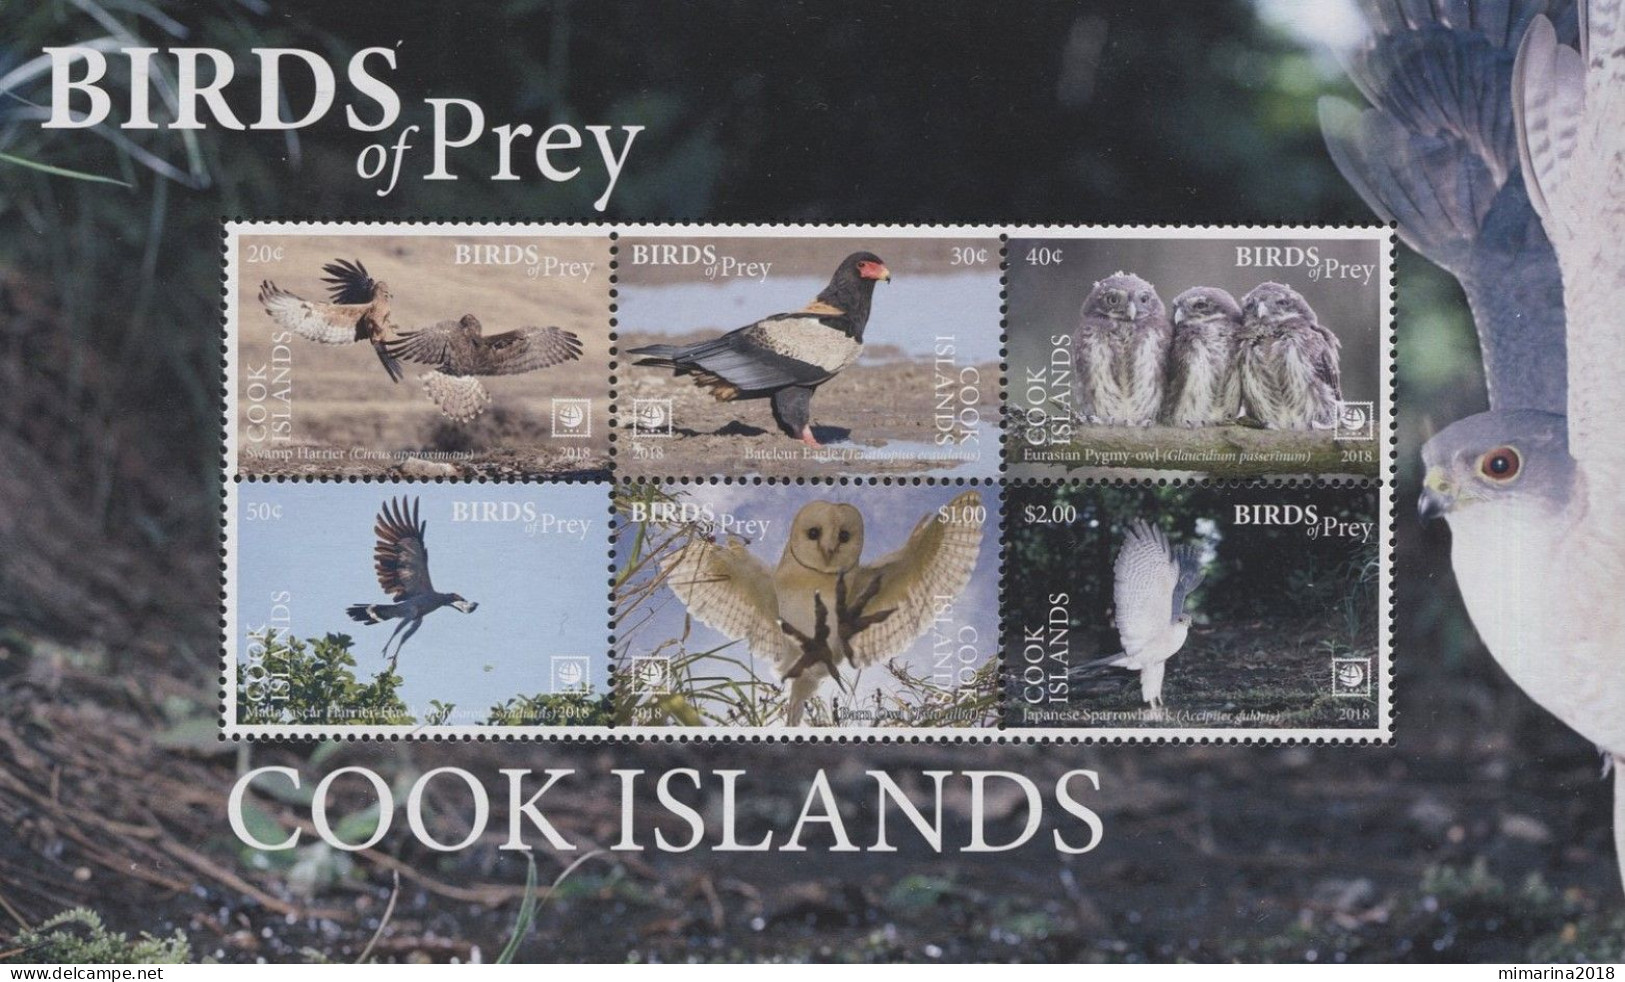 COOK ISLANDS  2018  MNH  "BIRDS OF PREY" - Eagles & Birds Of Prey